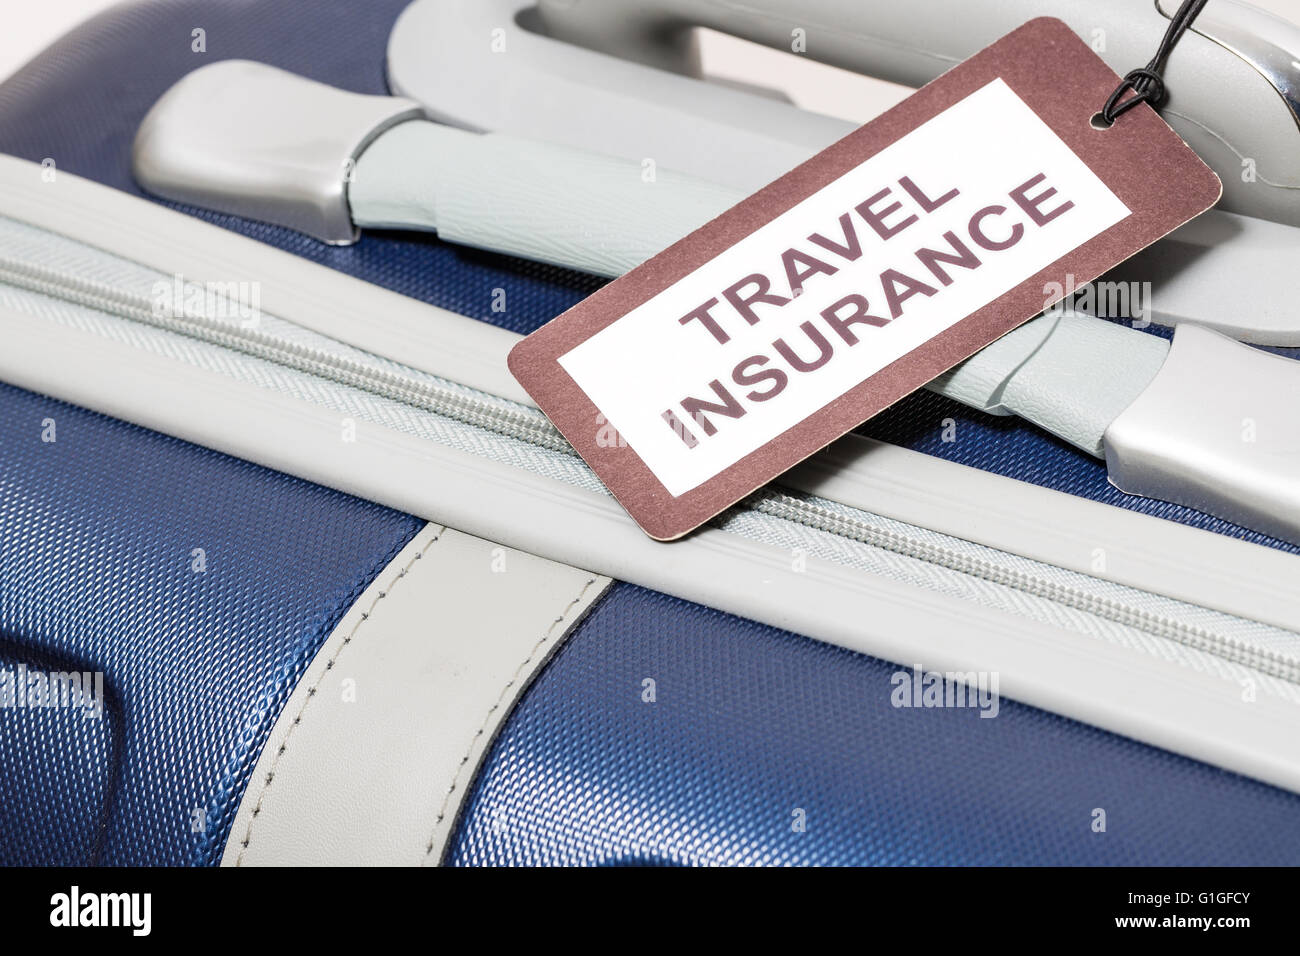 Reise Versicherung Label gebunden an einen Koffer. Stockfoto